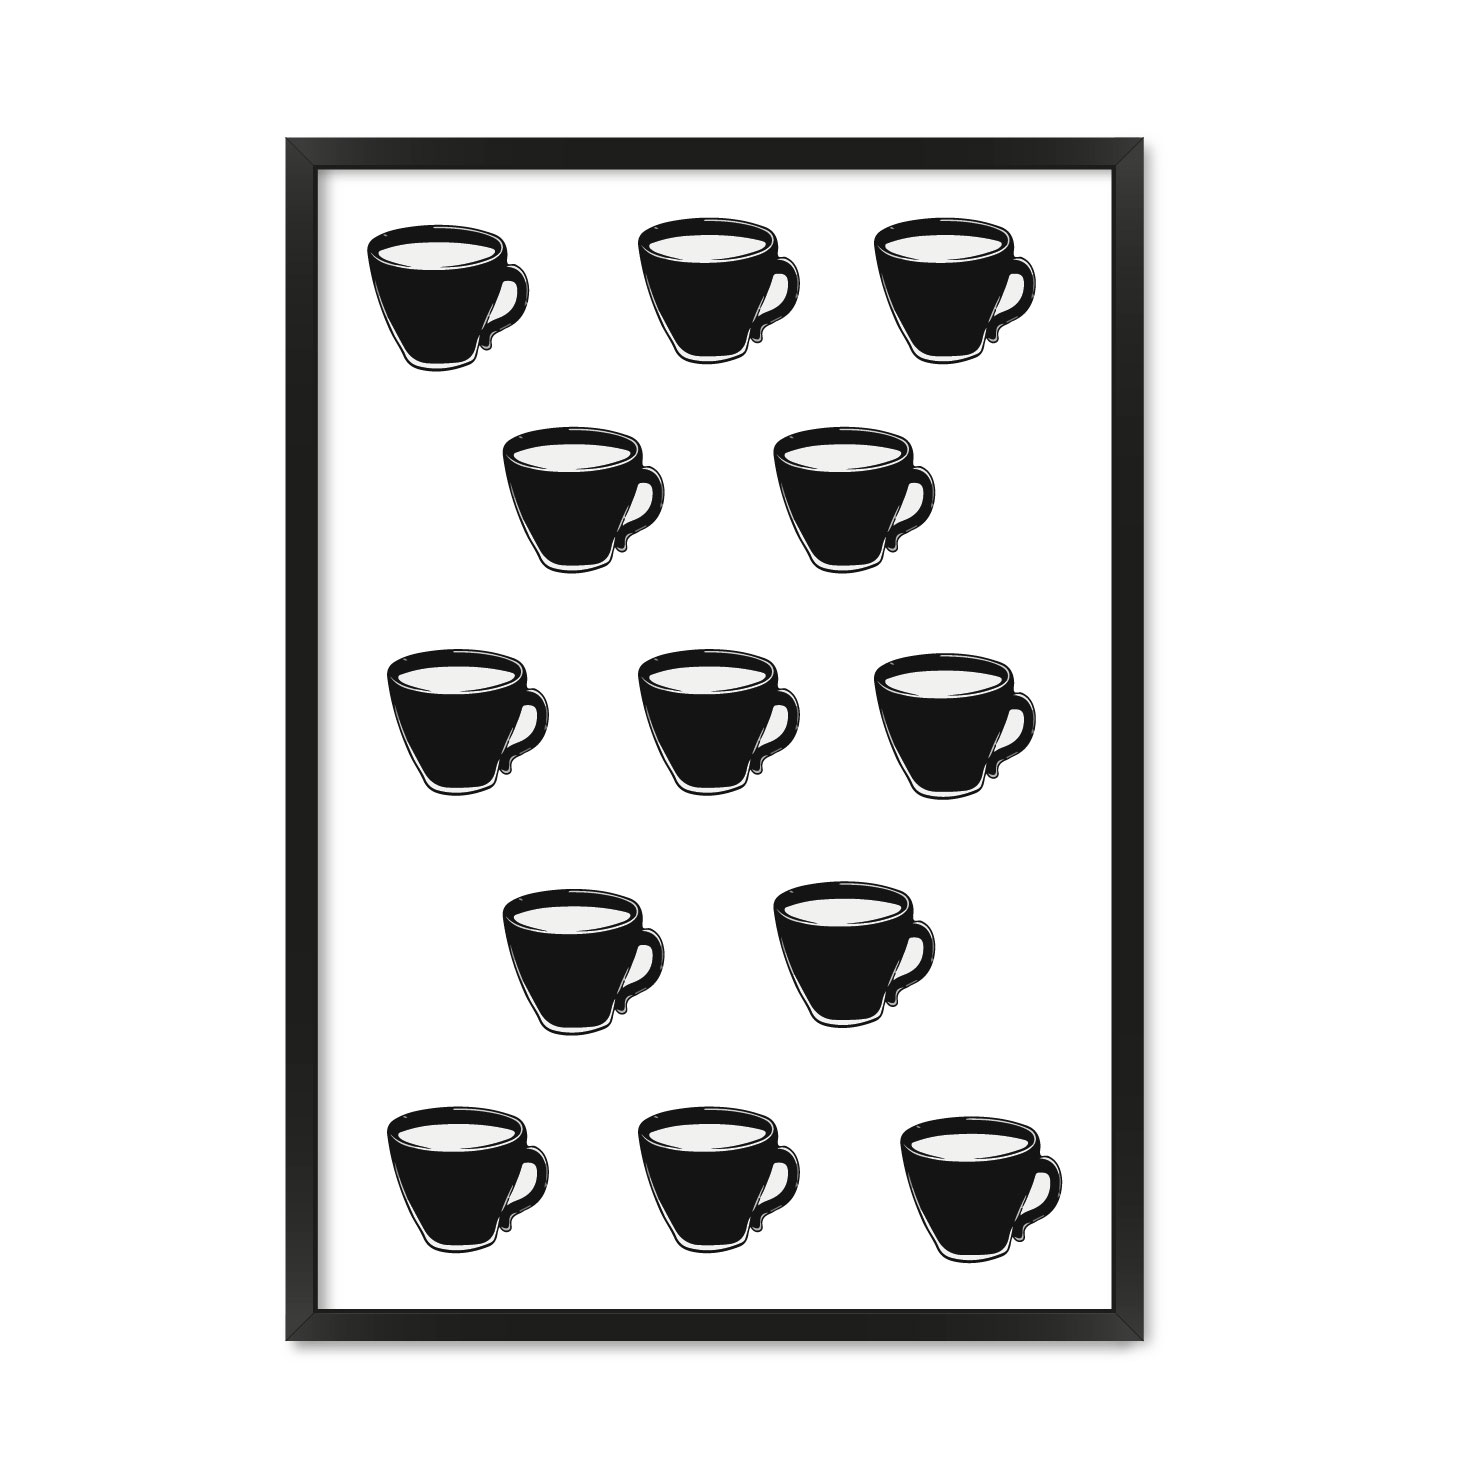 Постер "Coffee cup"